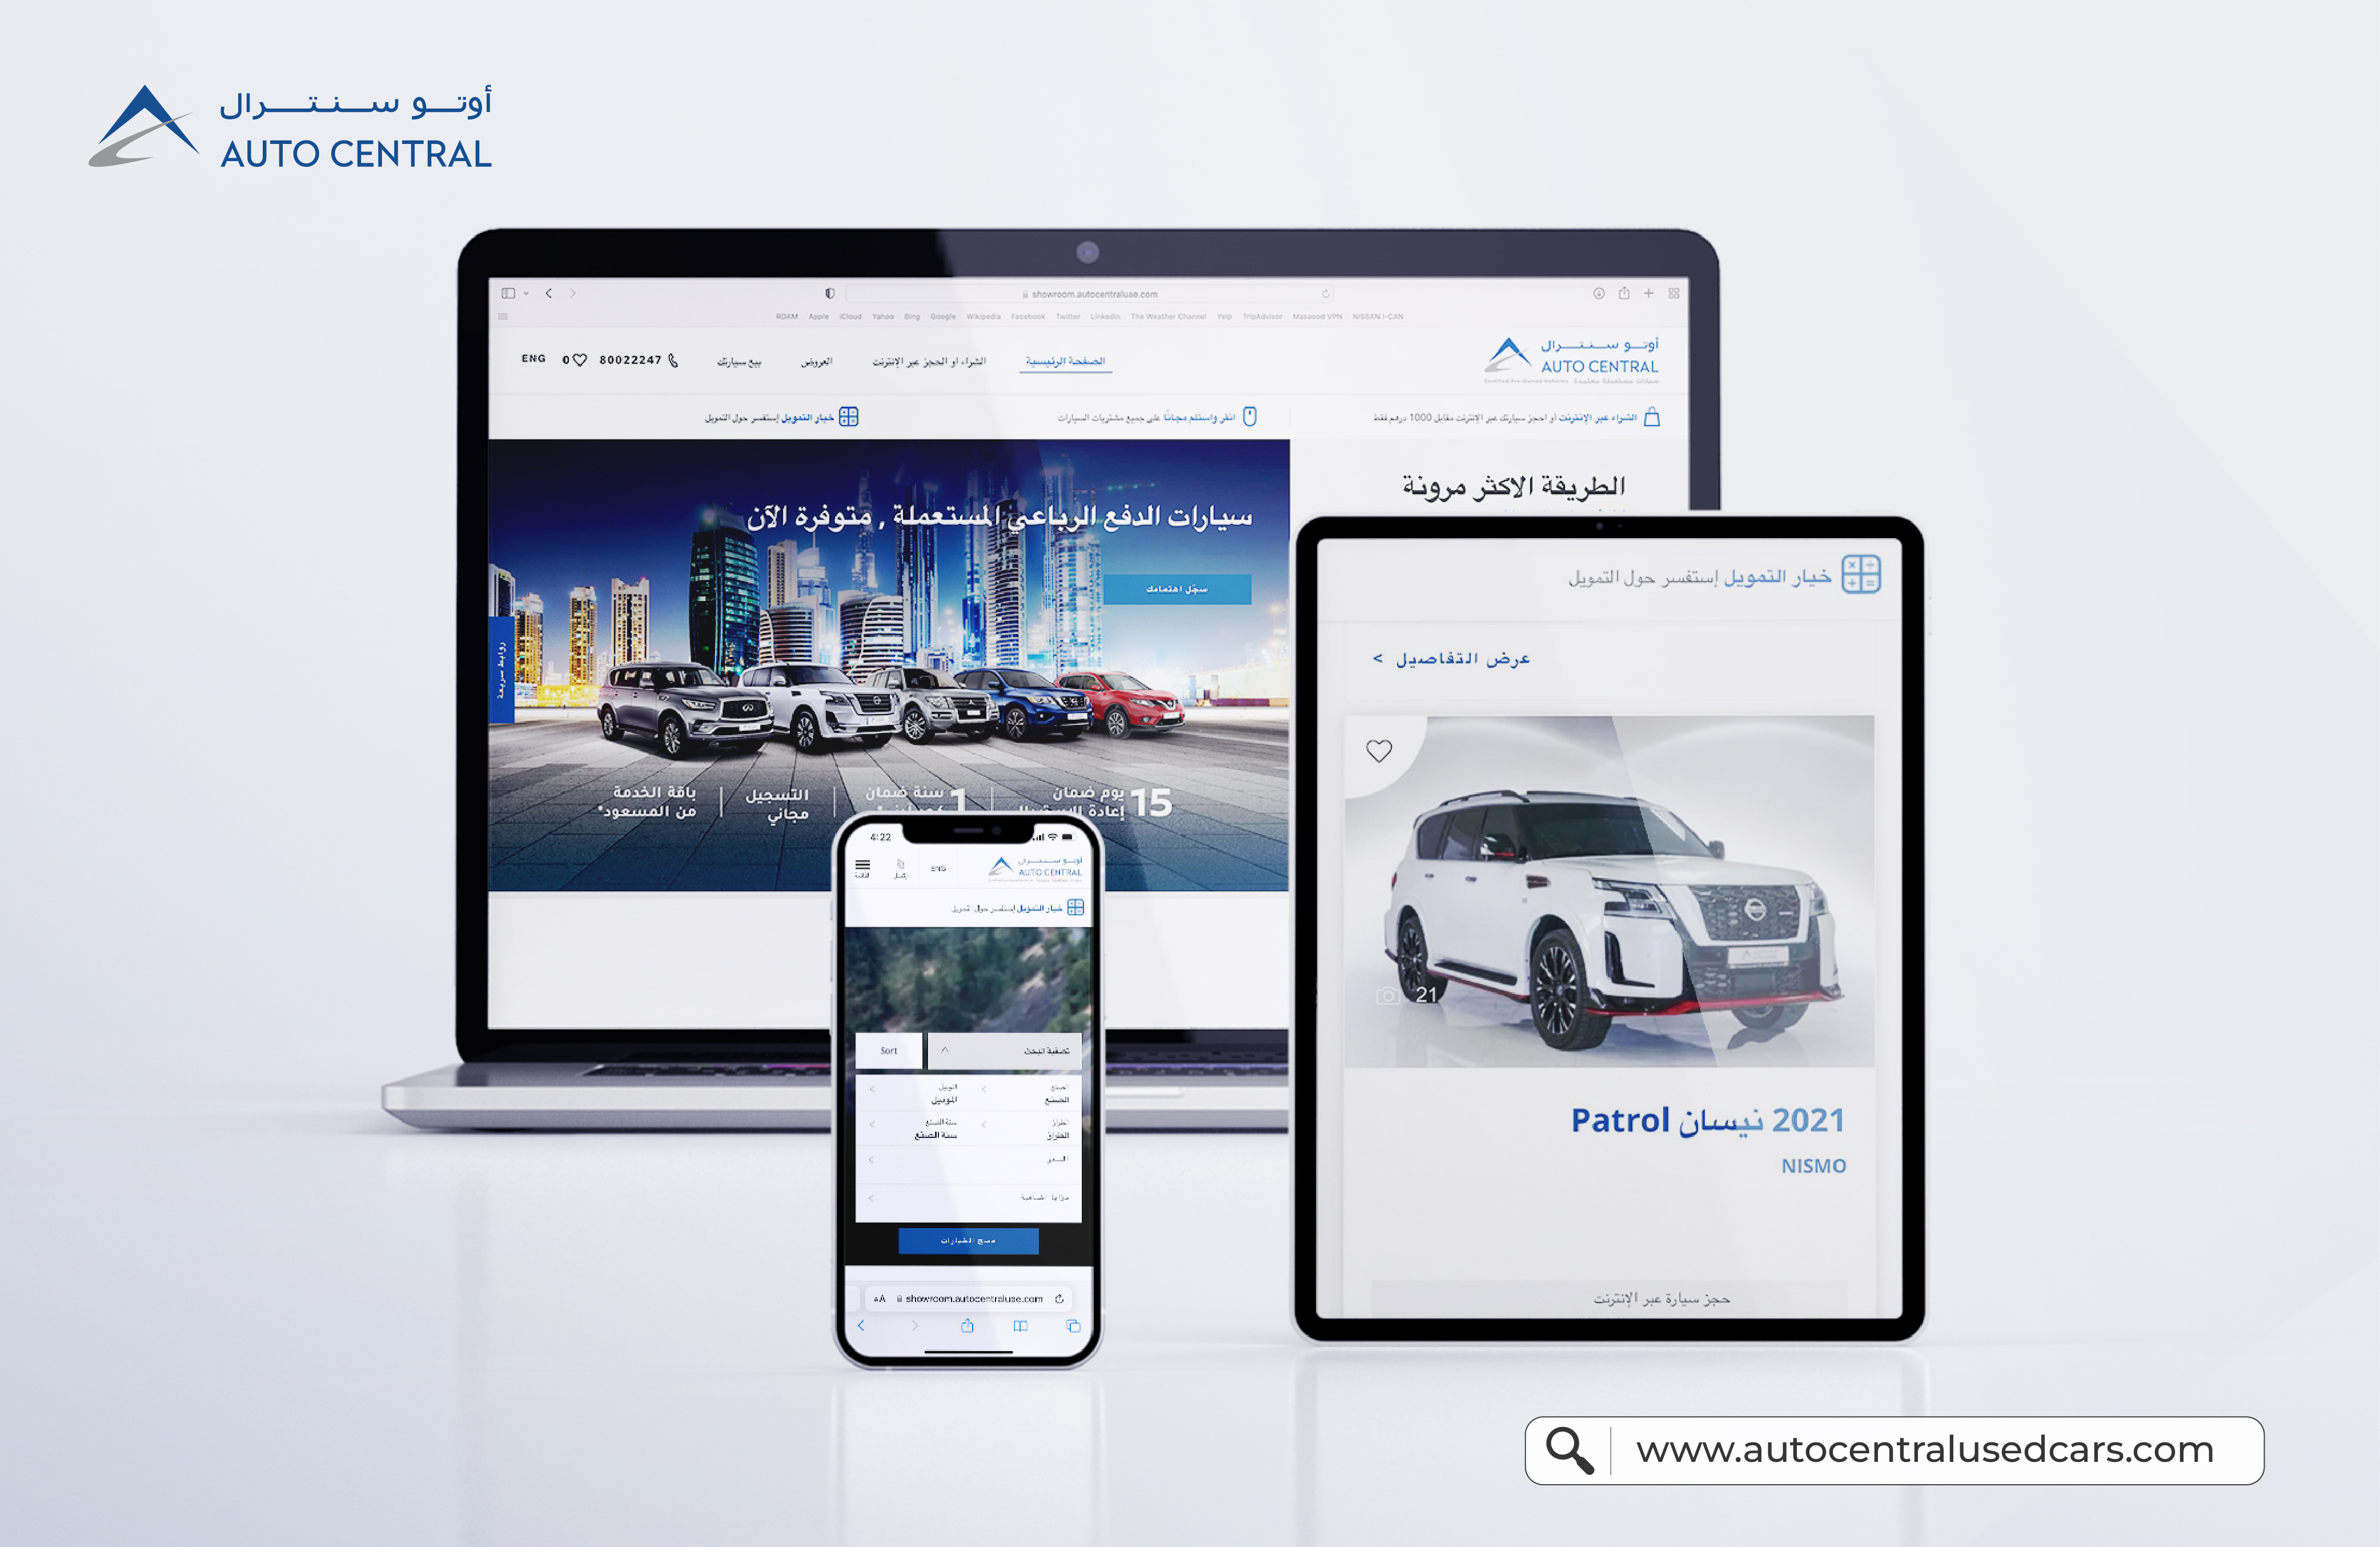 "أوتوسنترال" يطلق موقعاً إلكترونياً جديداً   يقدم للعملاء تجربة سلسة في شراء السيارات